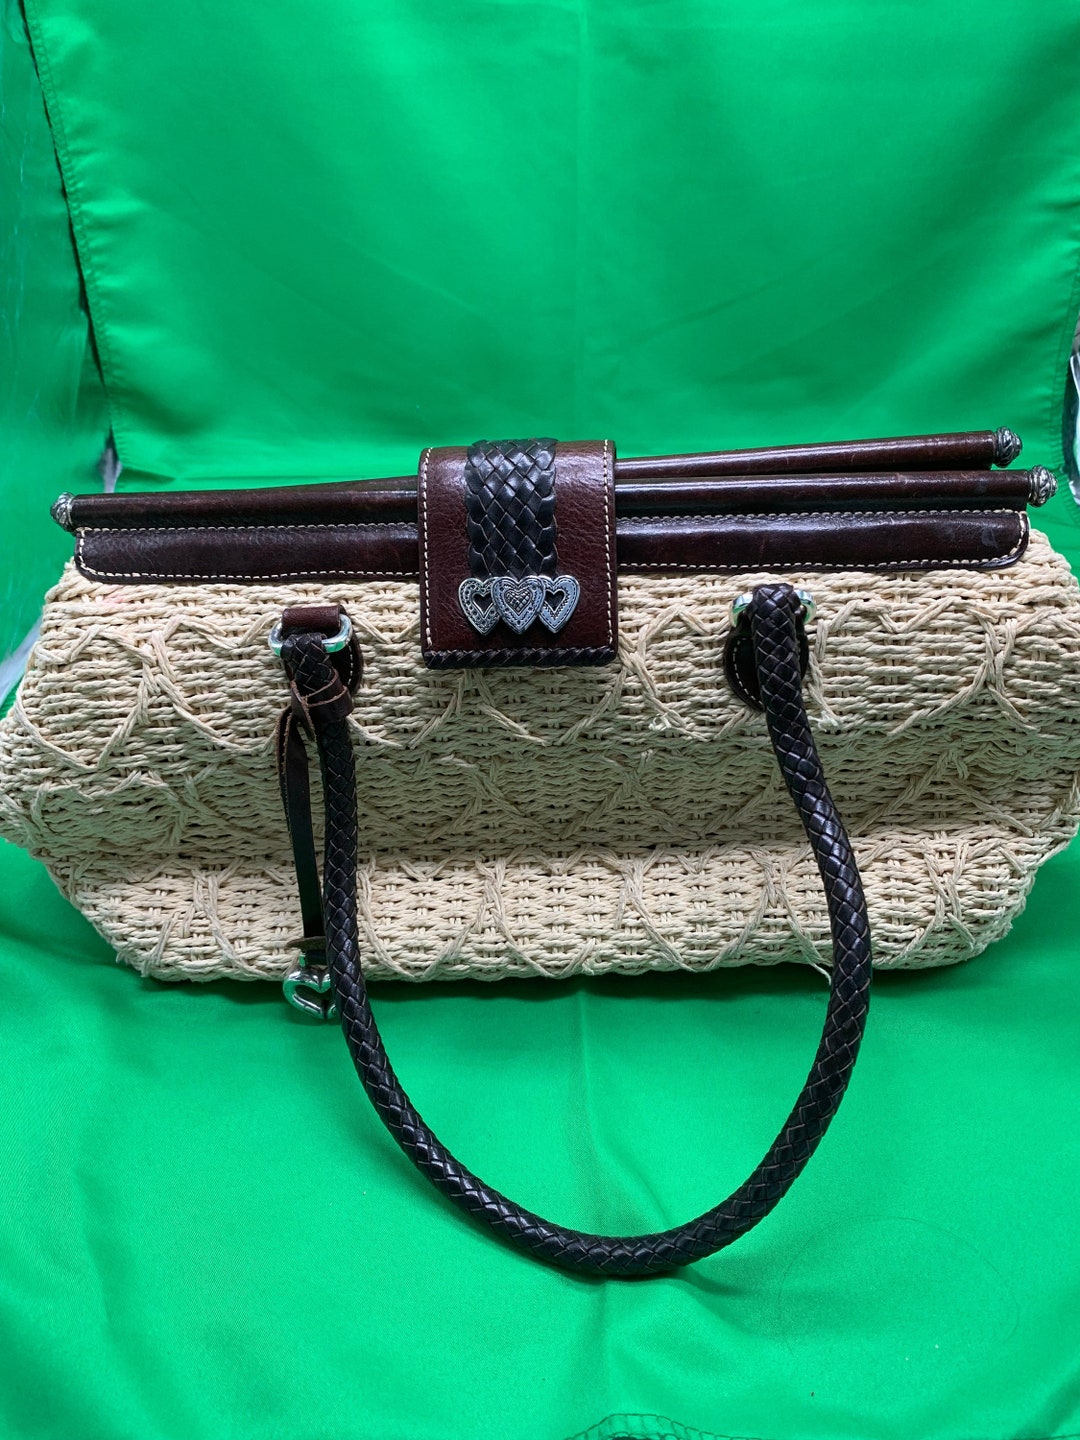 A Brighton Straw Handbag With Leather Trim. - Etsy